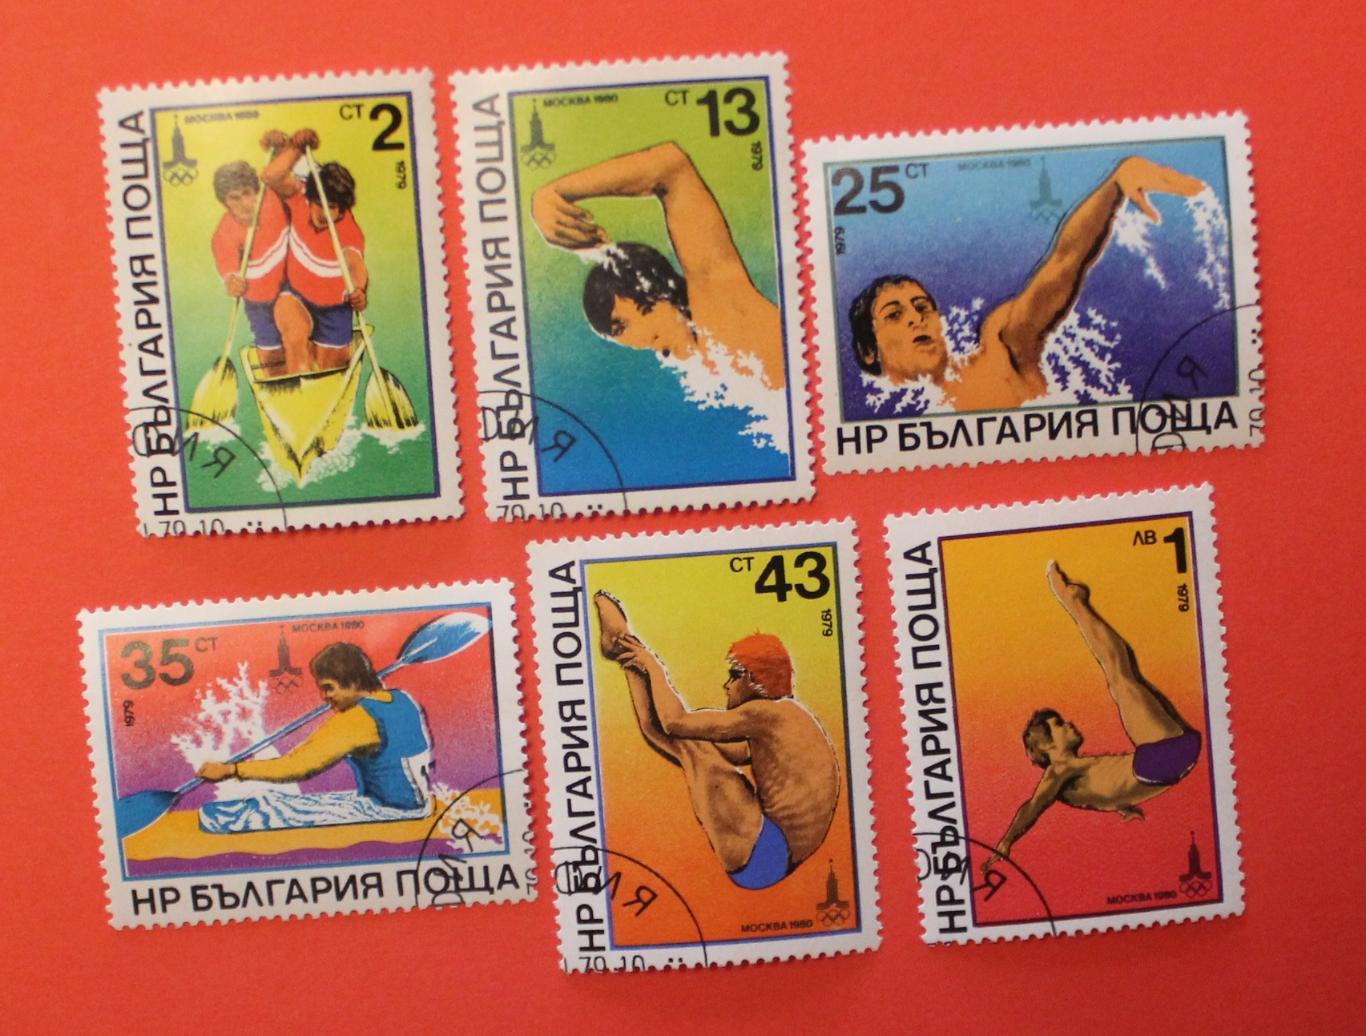 Олимпийские игры в Москве 1980. Набор водные виды спорта. Почта Болгарии 1979